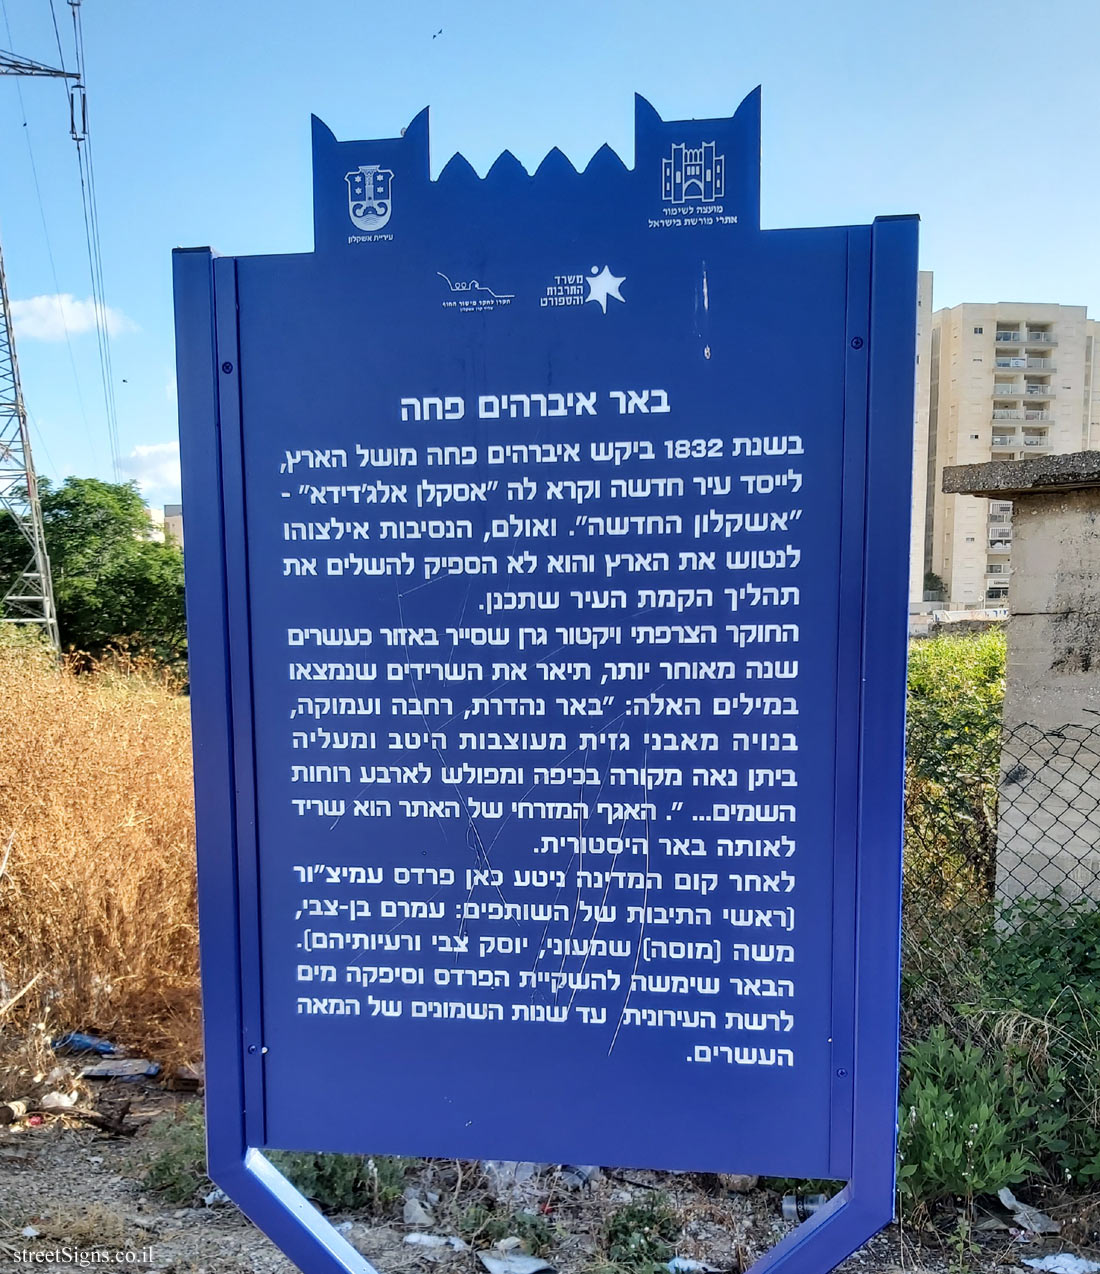 Ashkelon - Heritage Sites in Israel - Ibrahim Pasha’s well